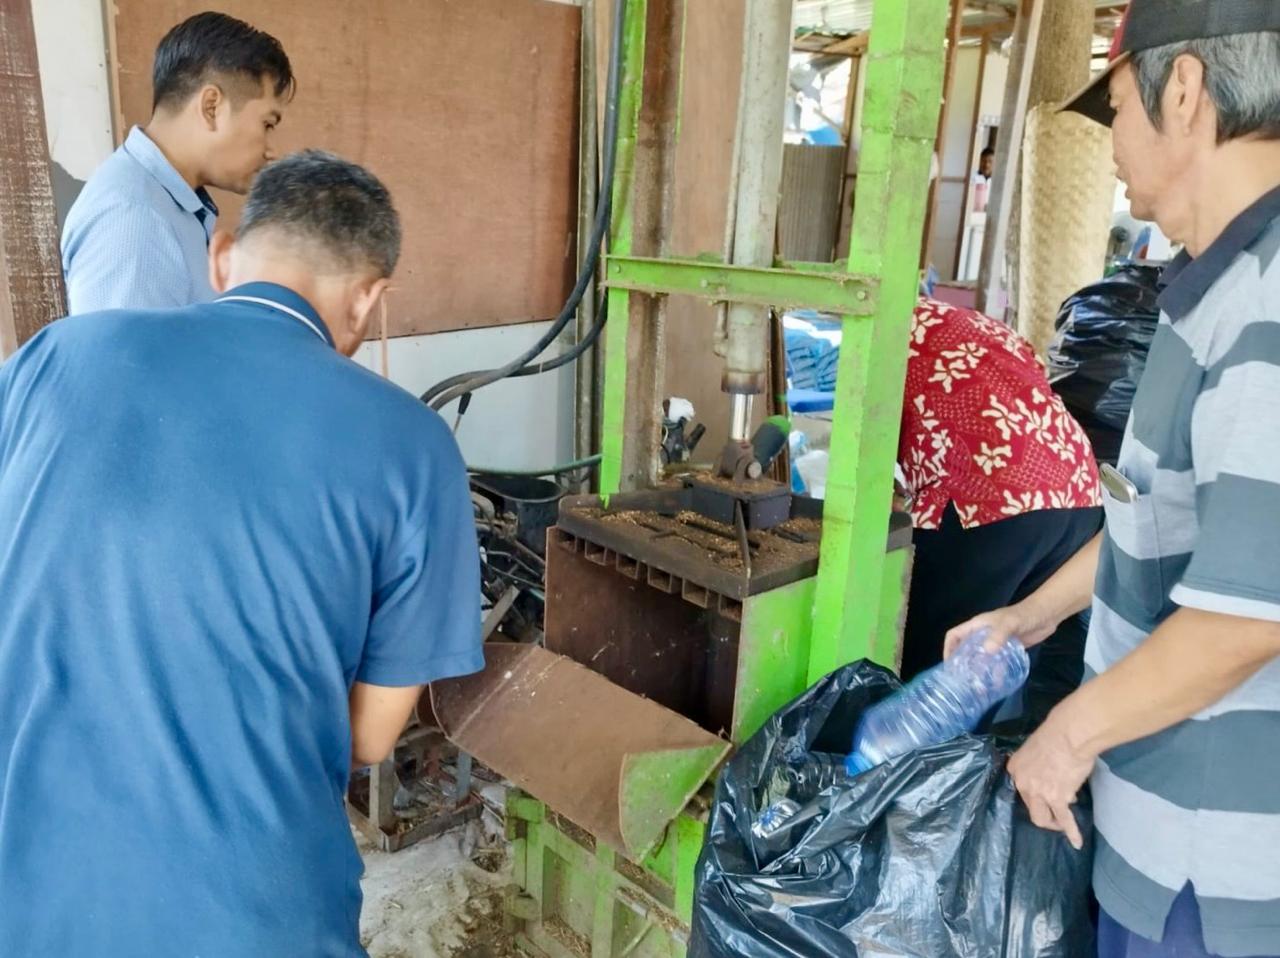 Peduli Lingkungan dan Kesehatan, Warga Surabaya Inisiasi Gerakan Sedekah Sampah Plastik